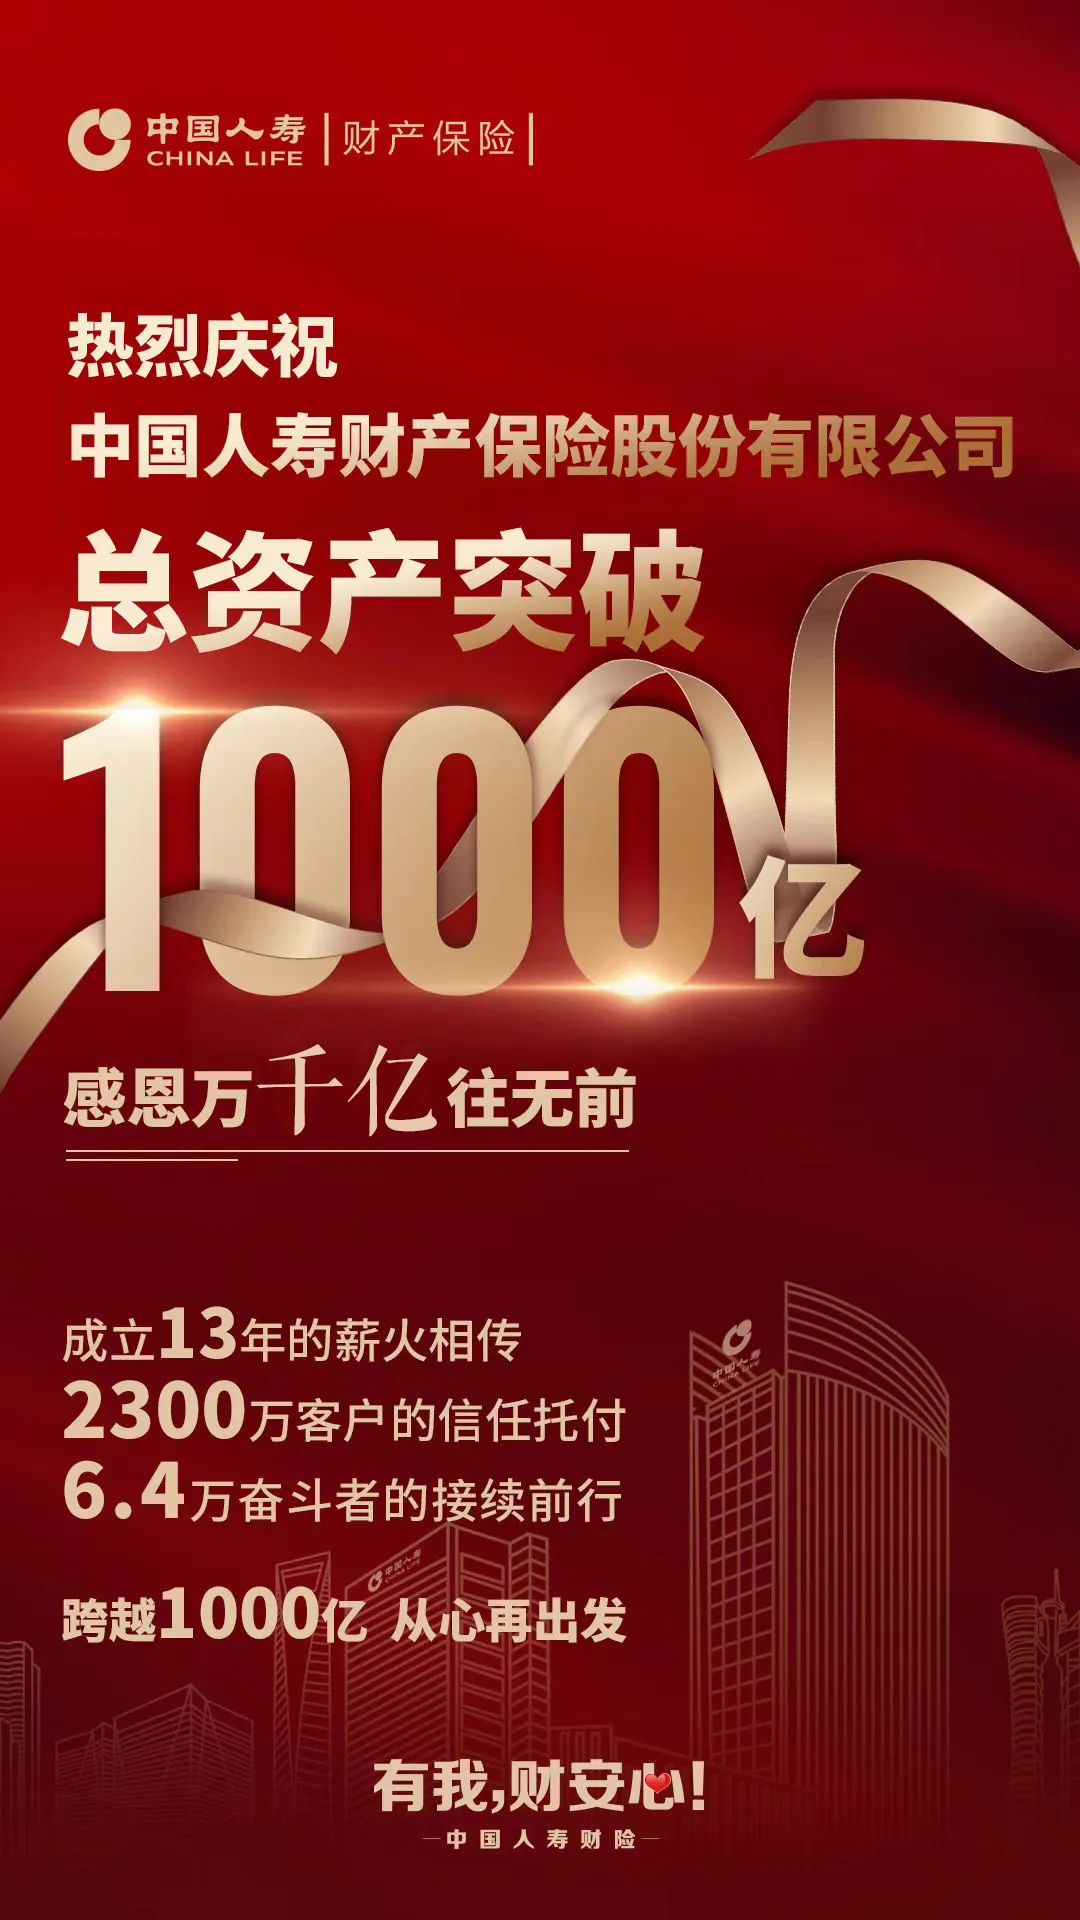 中国人寿全面升级70项服务产品 “更通畅、更快捷、更智慧、更贴心”-中国人寿